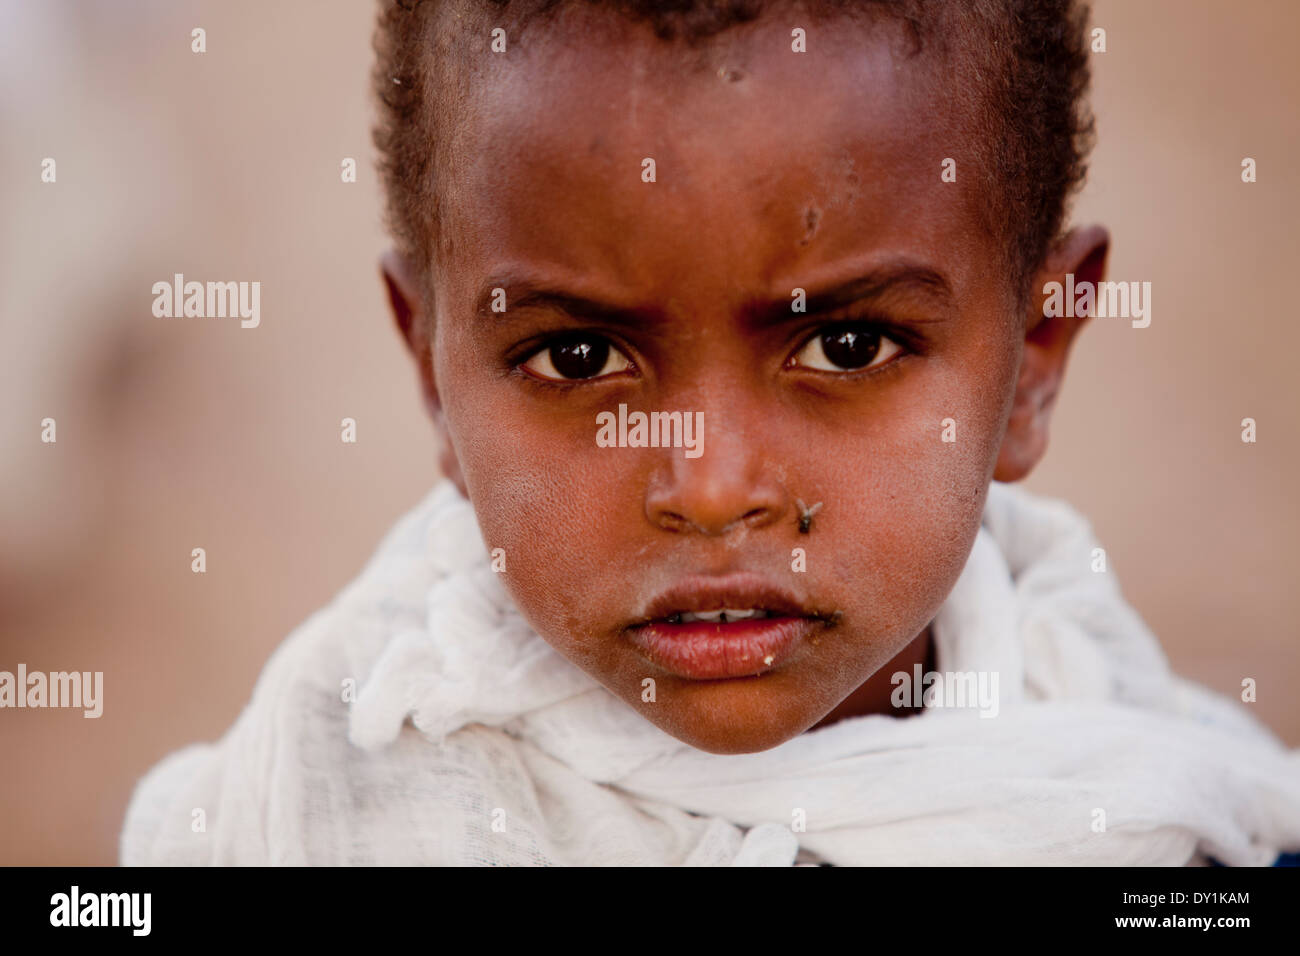 Junge afrikanische äthiopischen Kind mit der Fliege auf Gesicht Stockfoto